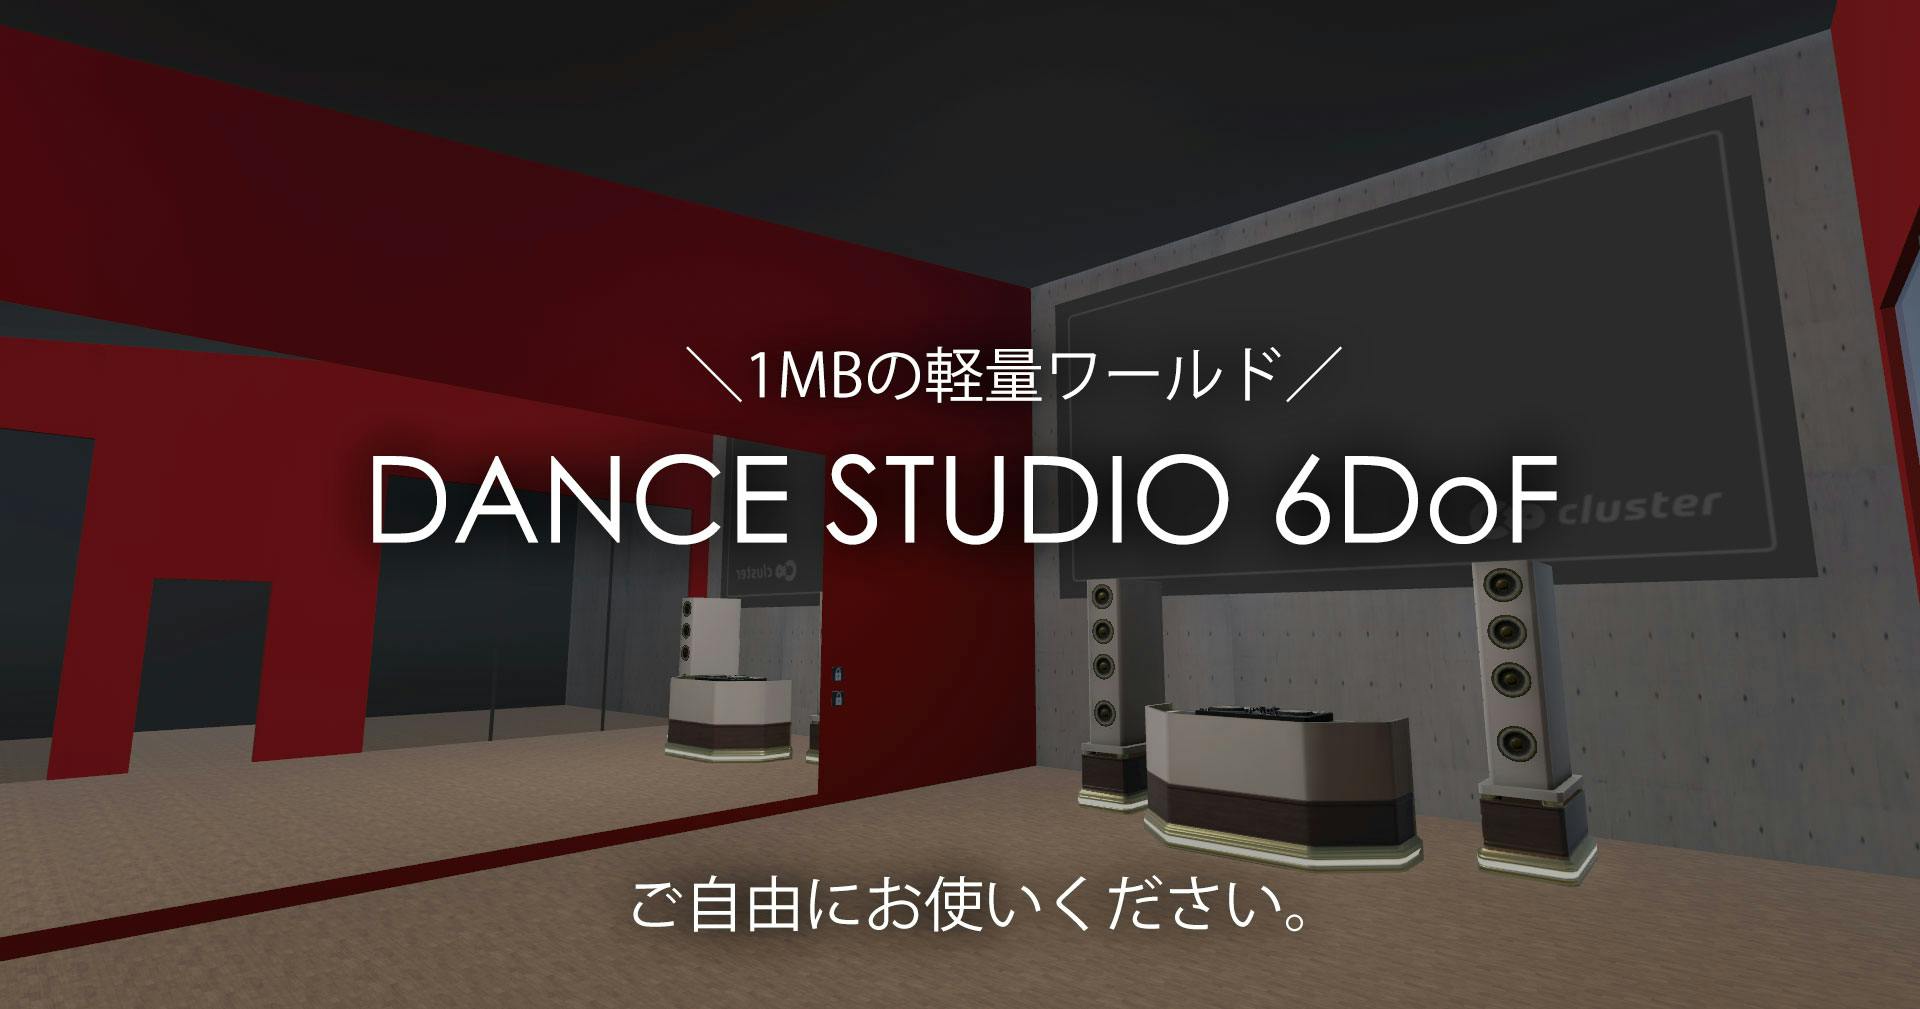 VR Dance Studio 6DoF